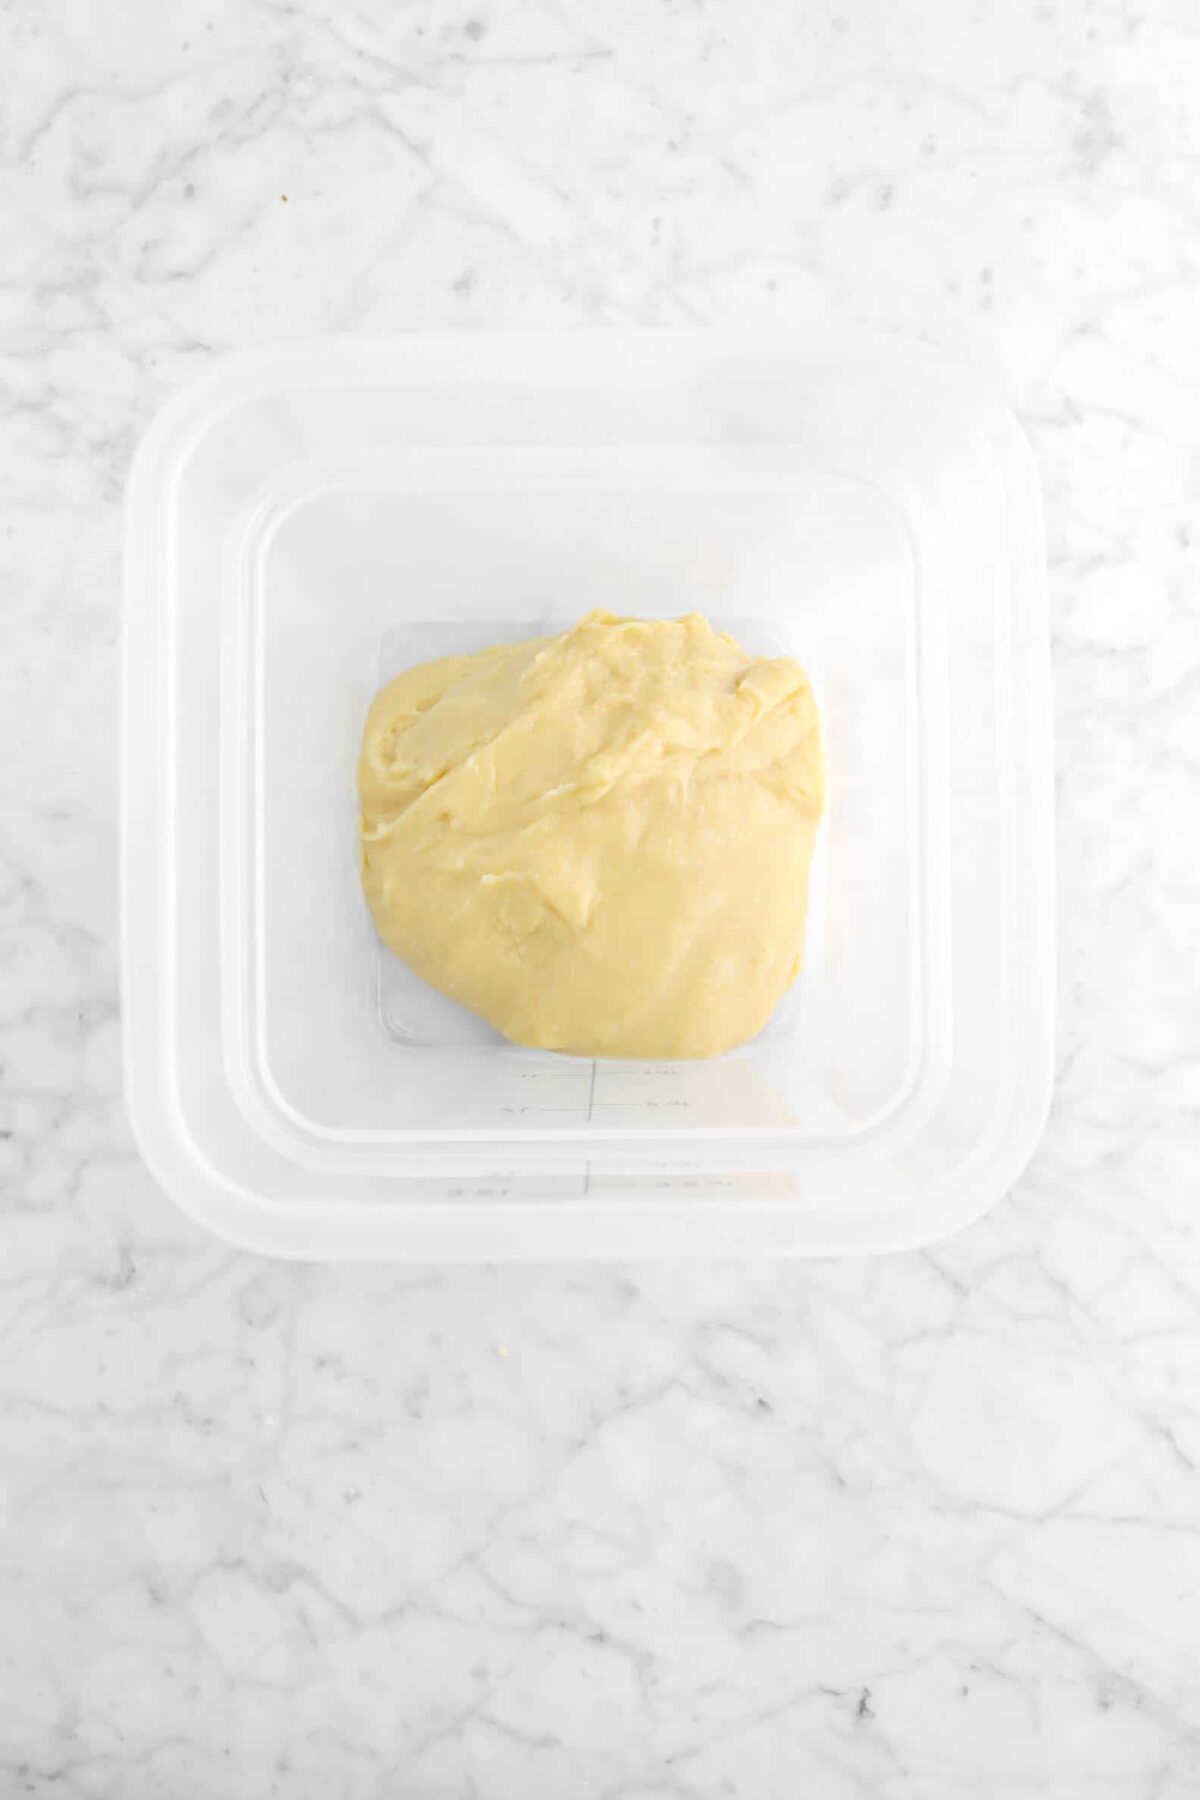 dough in plastic container